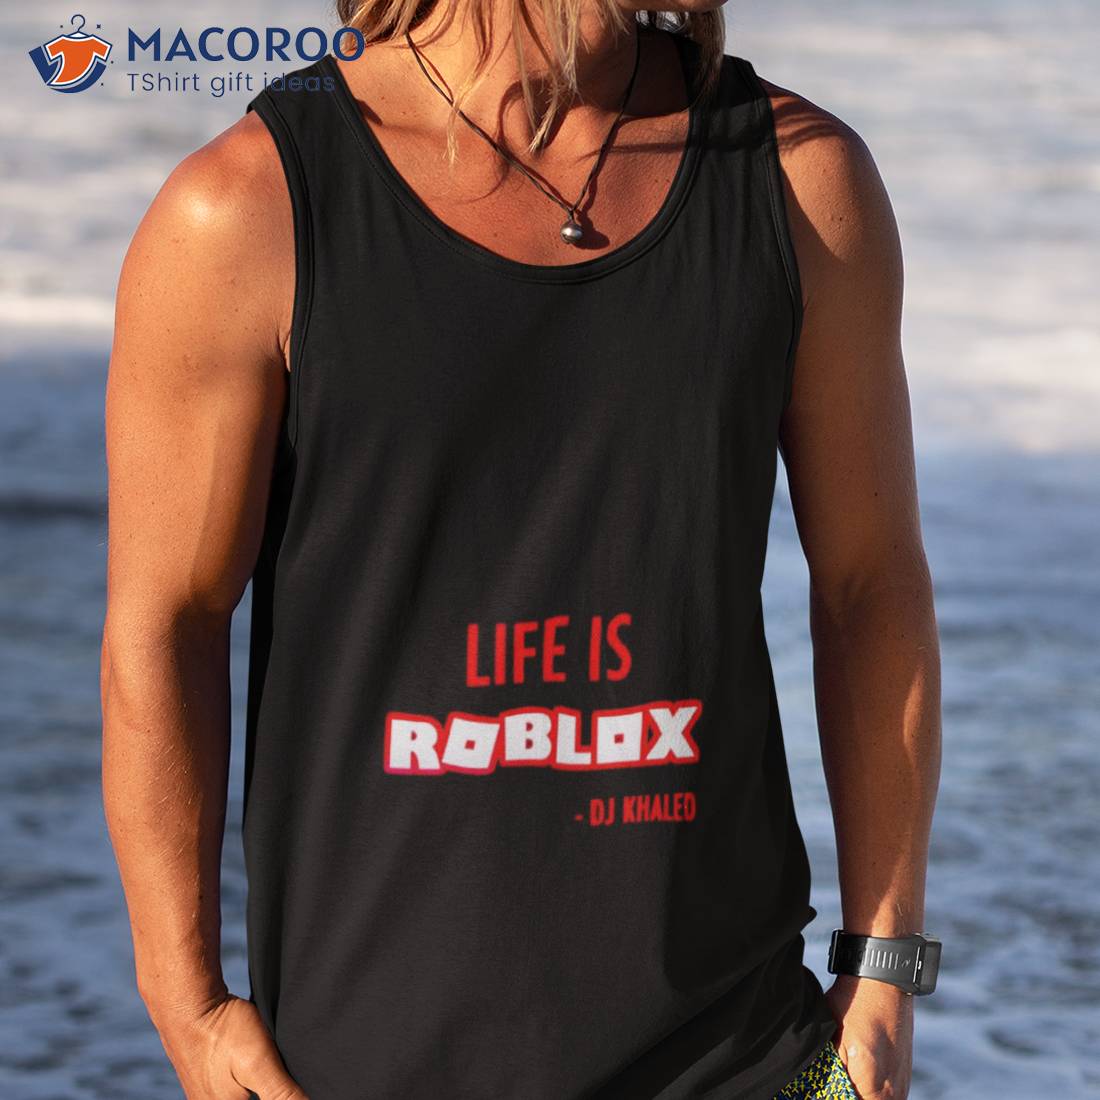 Life is Roblox - DJ Khaled